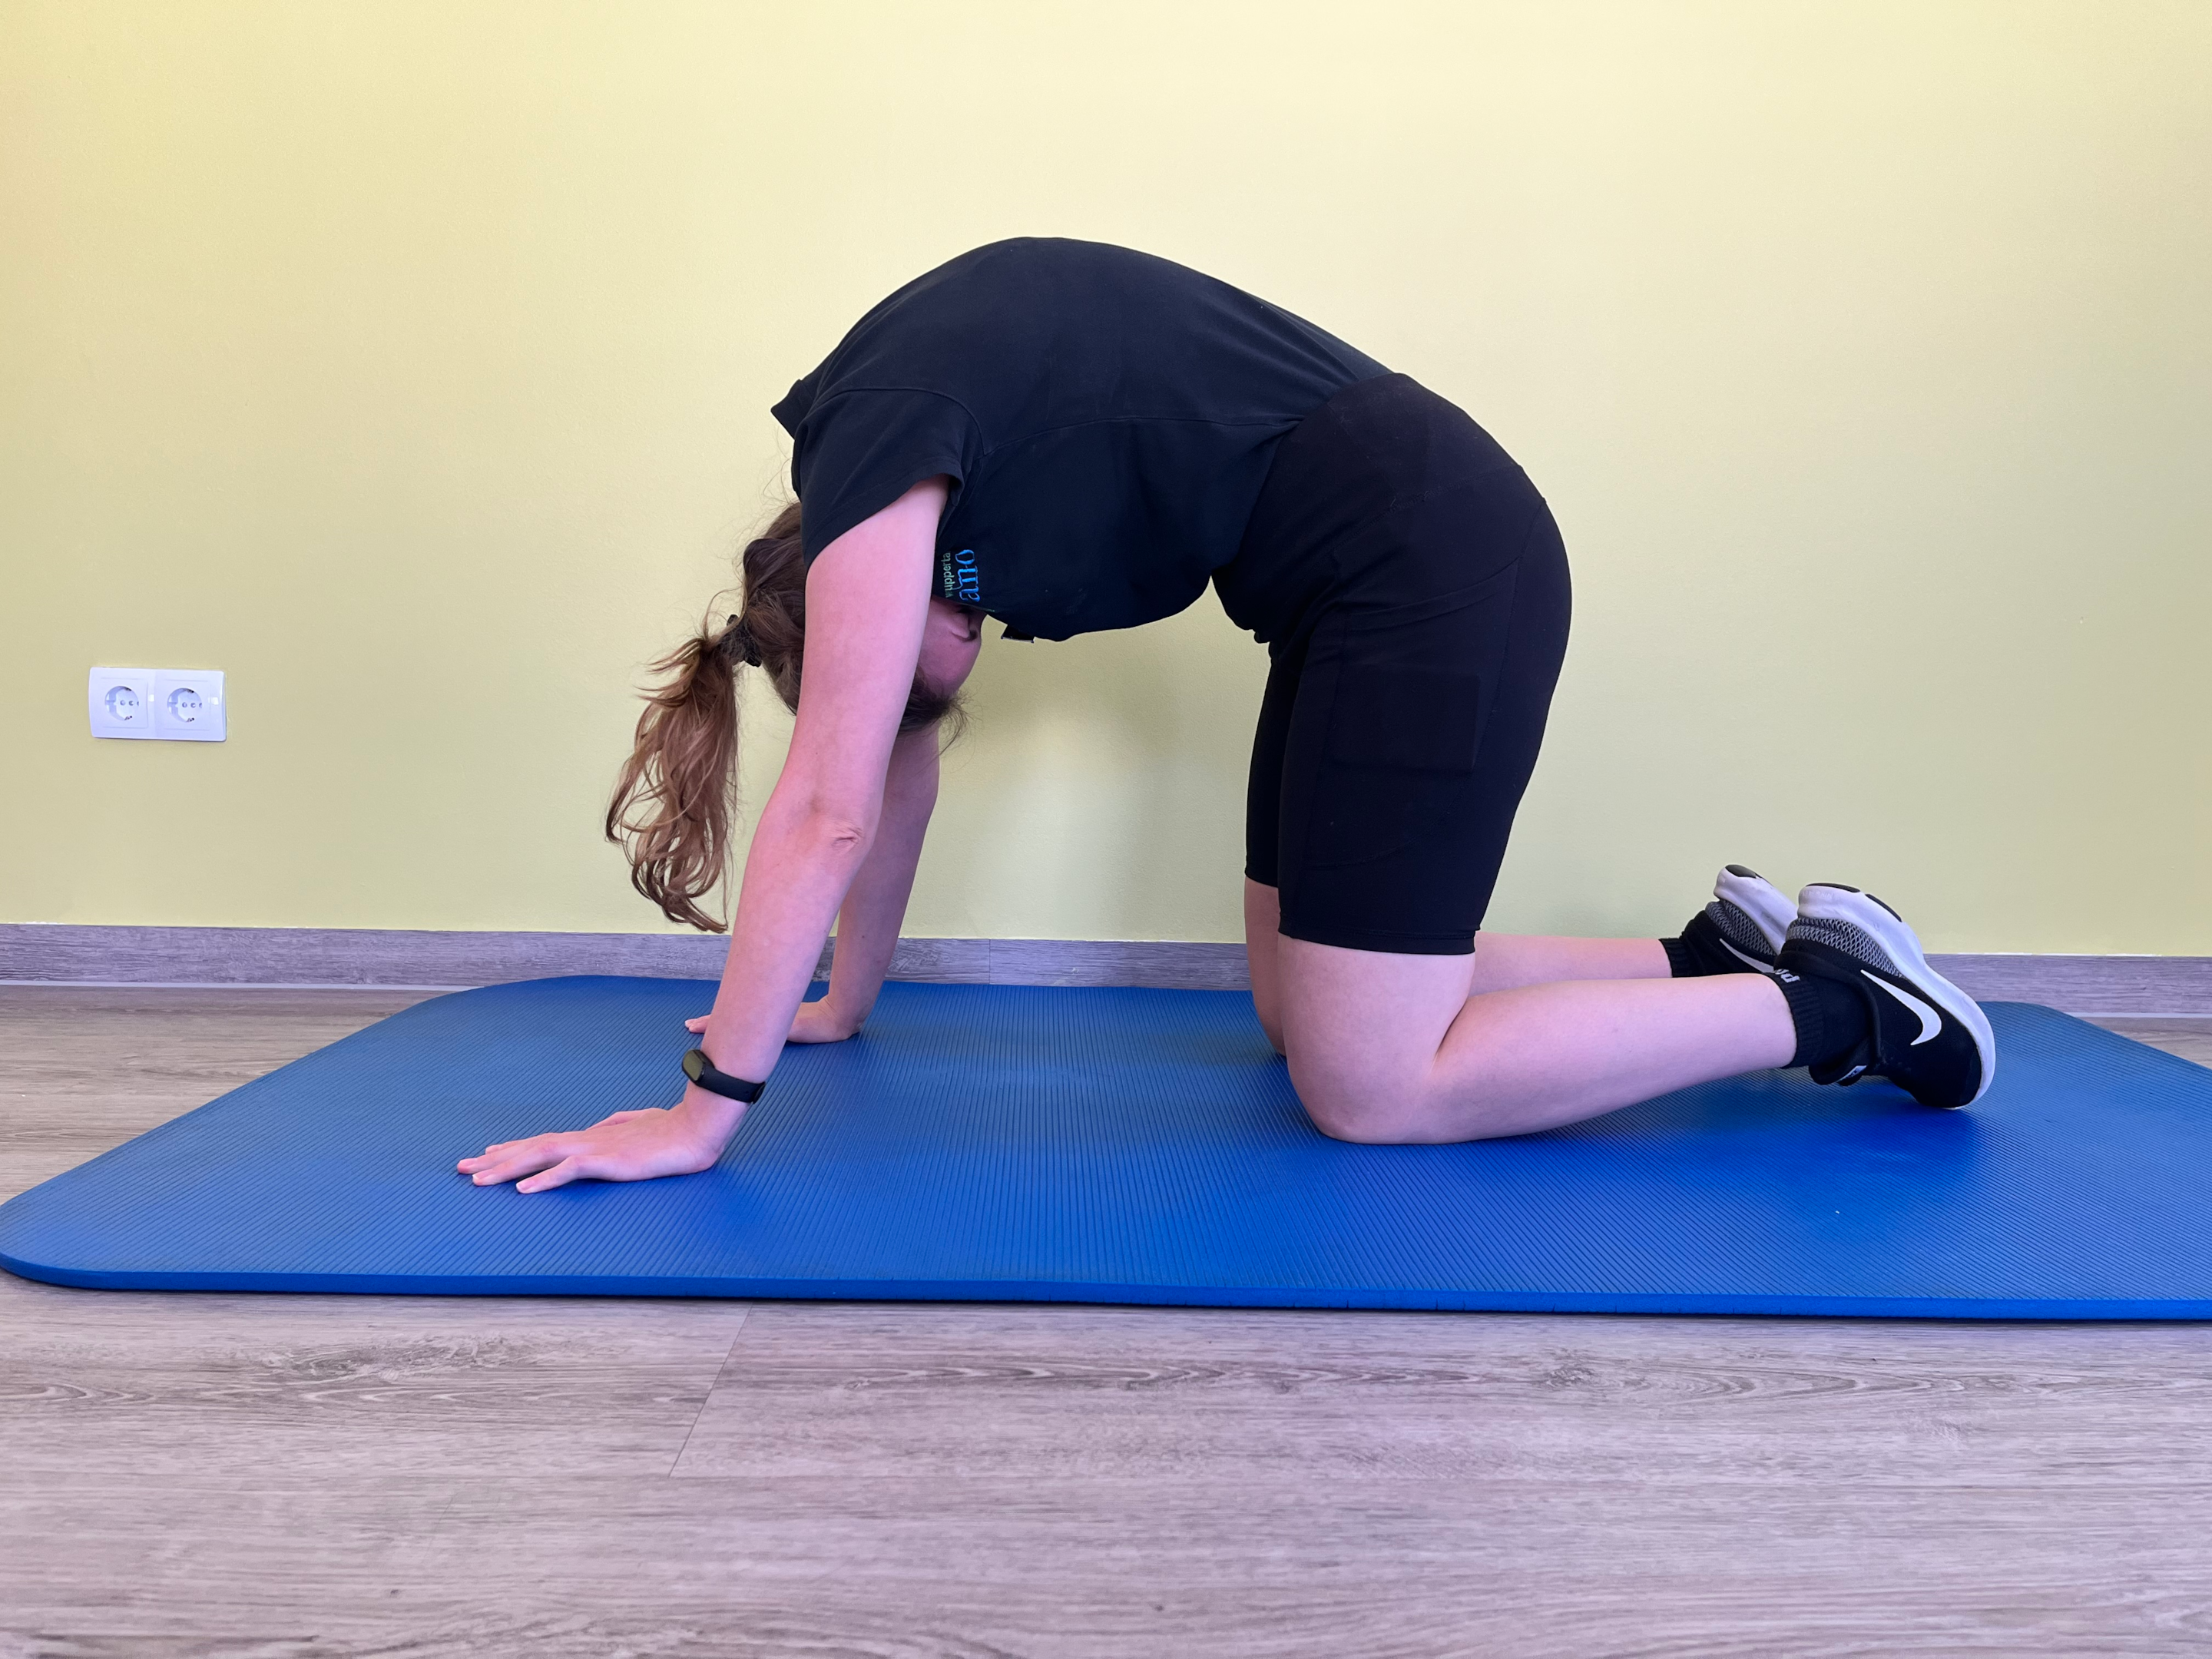 Für Übung 1 stellen Sie die Beine und Arme auf den Boden und machen einen Katzenbuckel - diese Übung kommt aus dem Yoga.